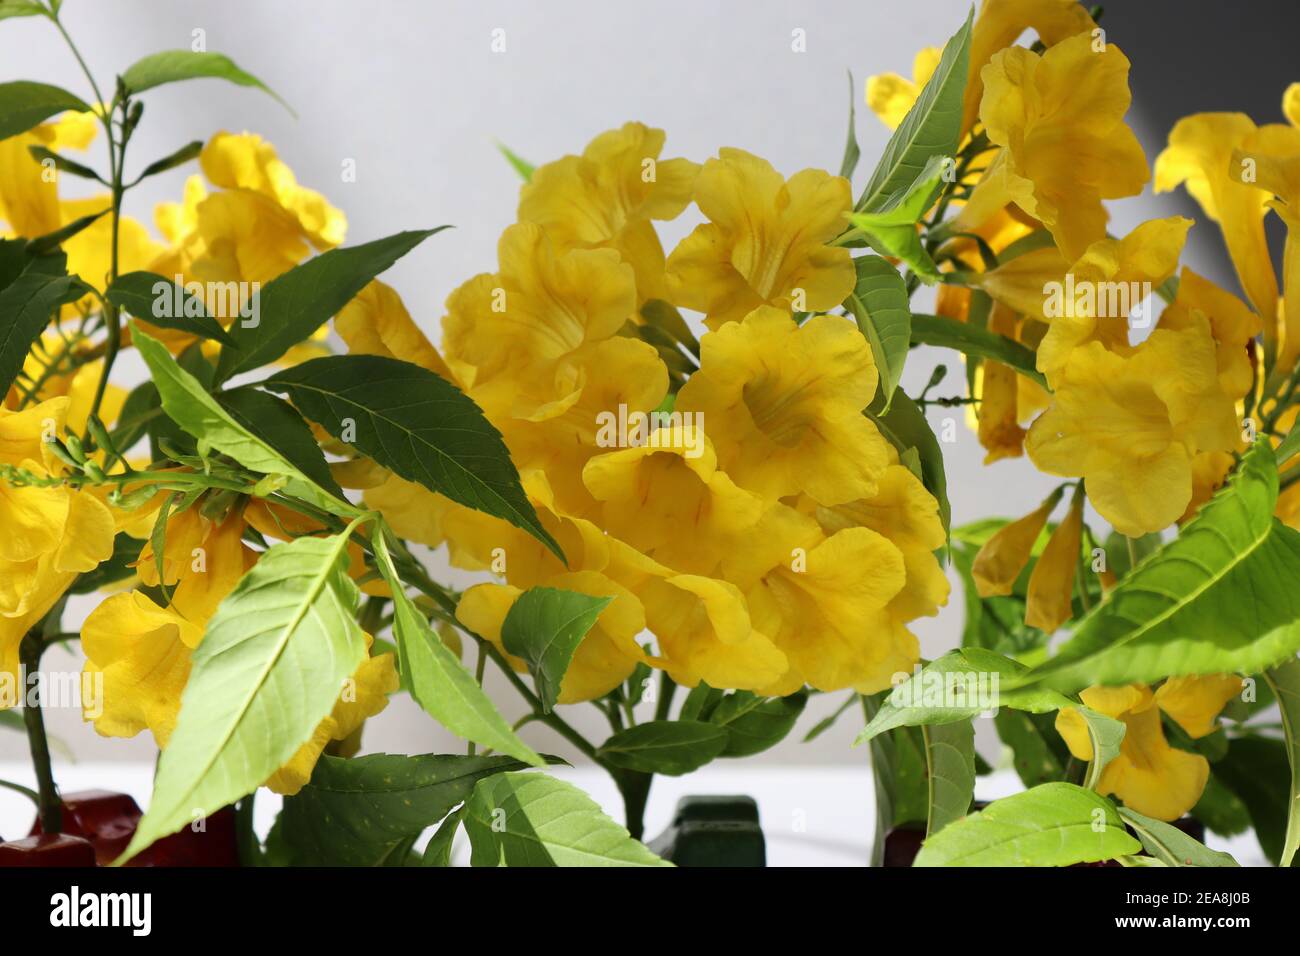 La natura ha dato un vero colore giallo attraverso questi petali di fiori. Foto Stock